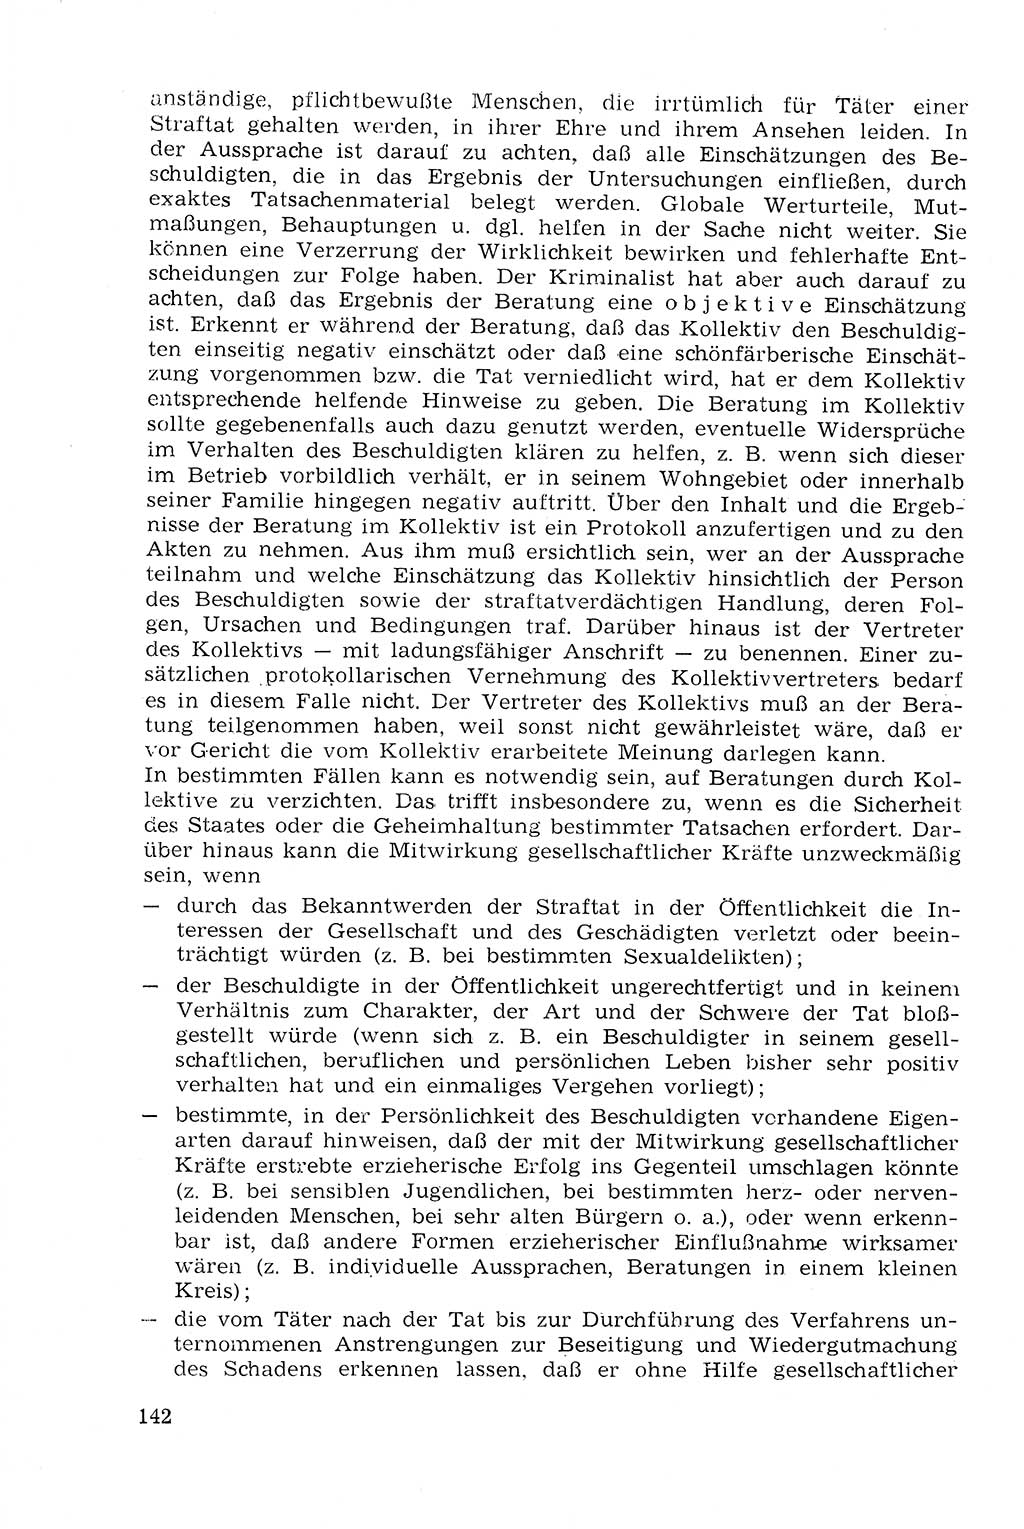 Strafprozeßrecht der DDR (Deutsche Demokratische Republik), Lehrmaterial 1969, Seite 142 (Strafprozeßr. DDR Lehrmat. 1969, S. 142)